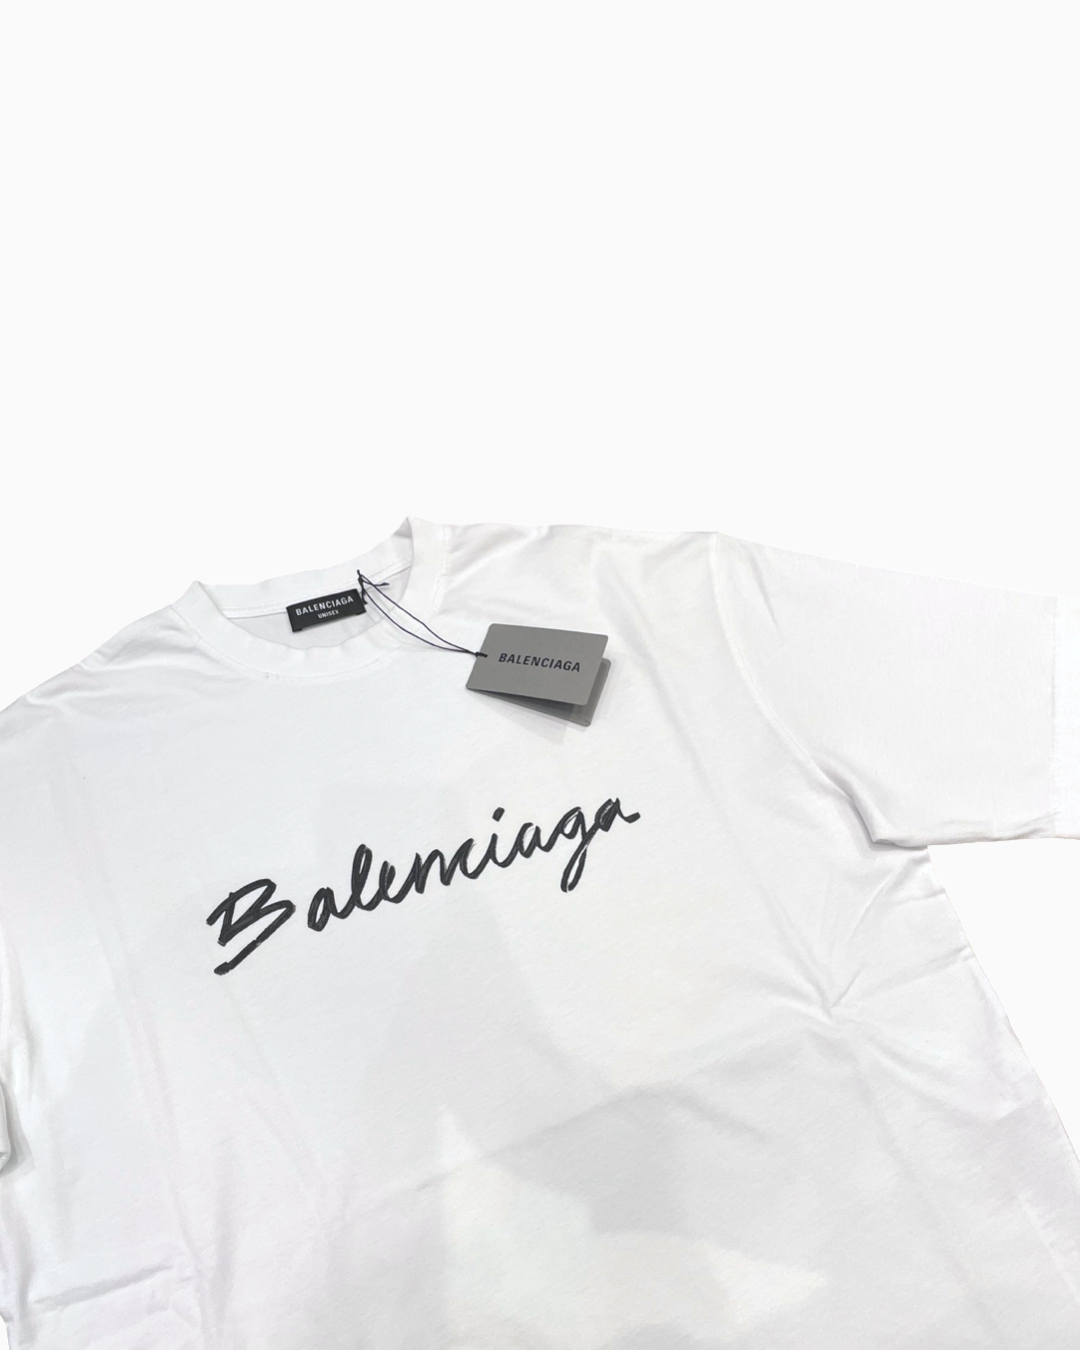 Balenciaga Spray Logo T-shirt – FUTURO